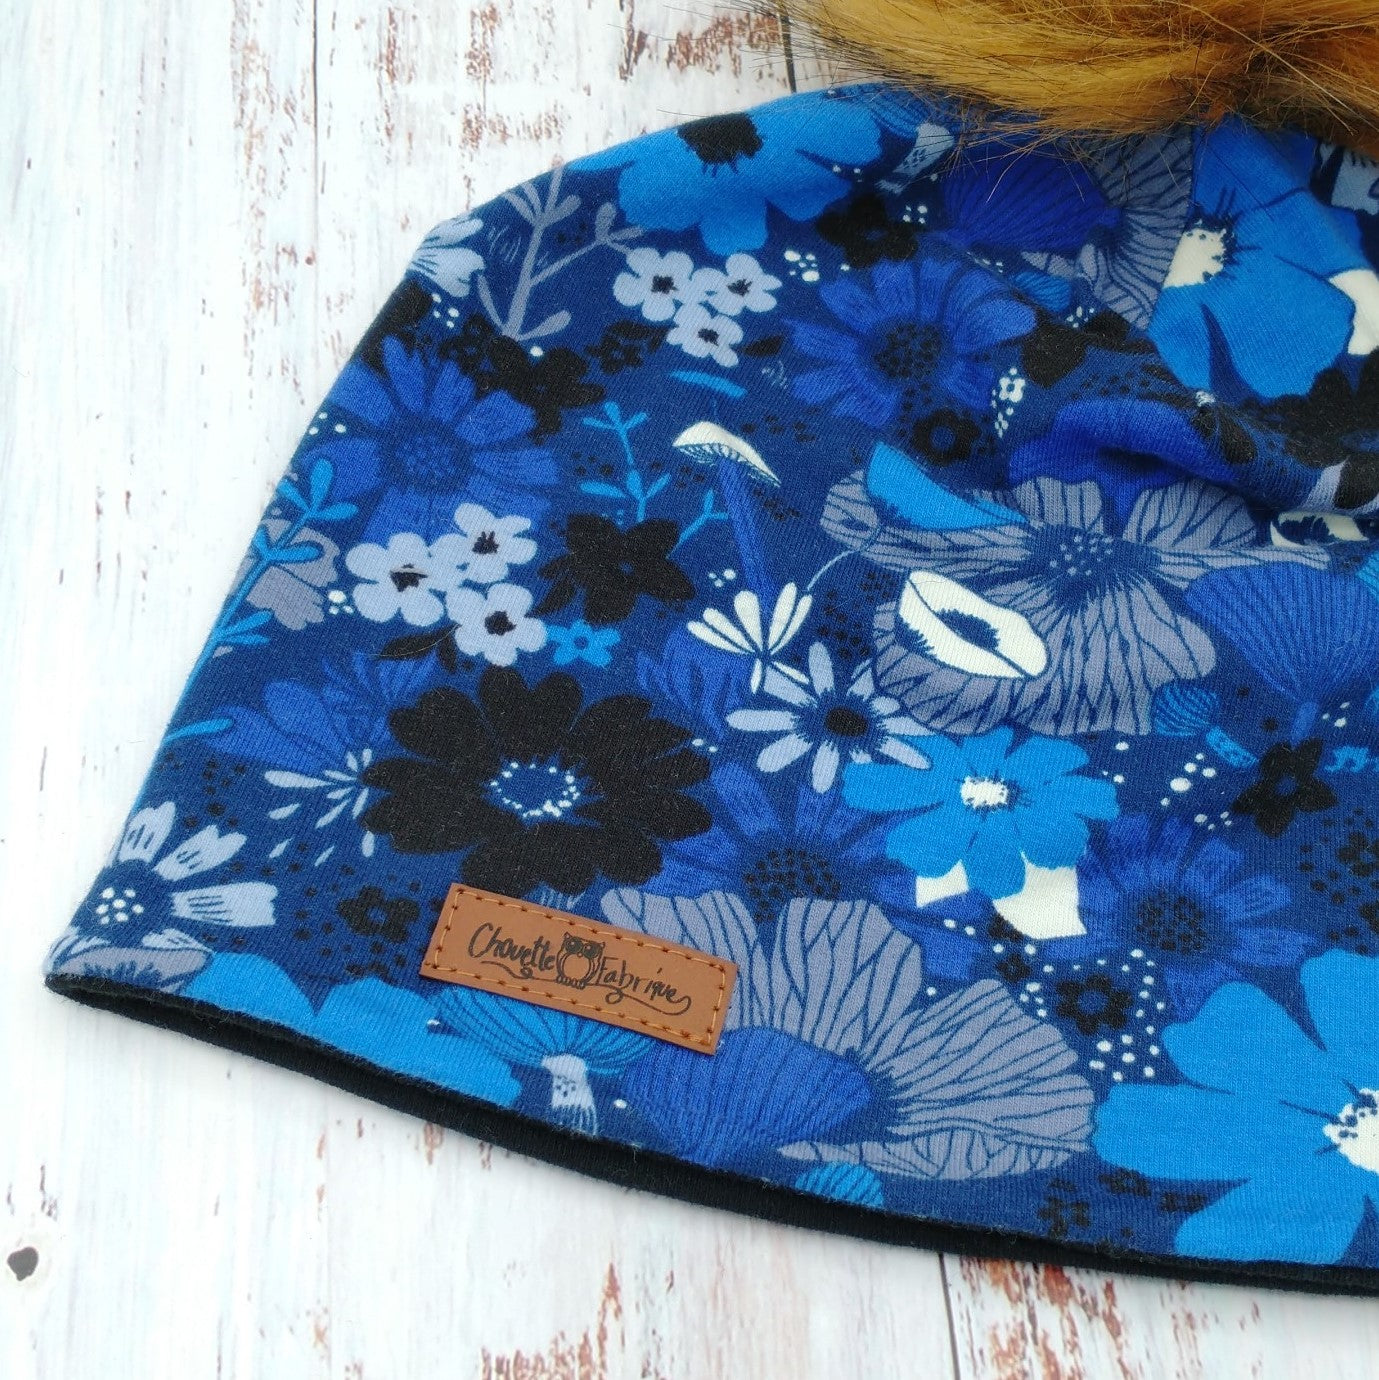 Tuque Printemps/Automne (JERSEY) Pompon amovible - Fleurs bleues - Fond marine